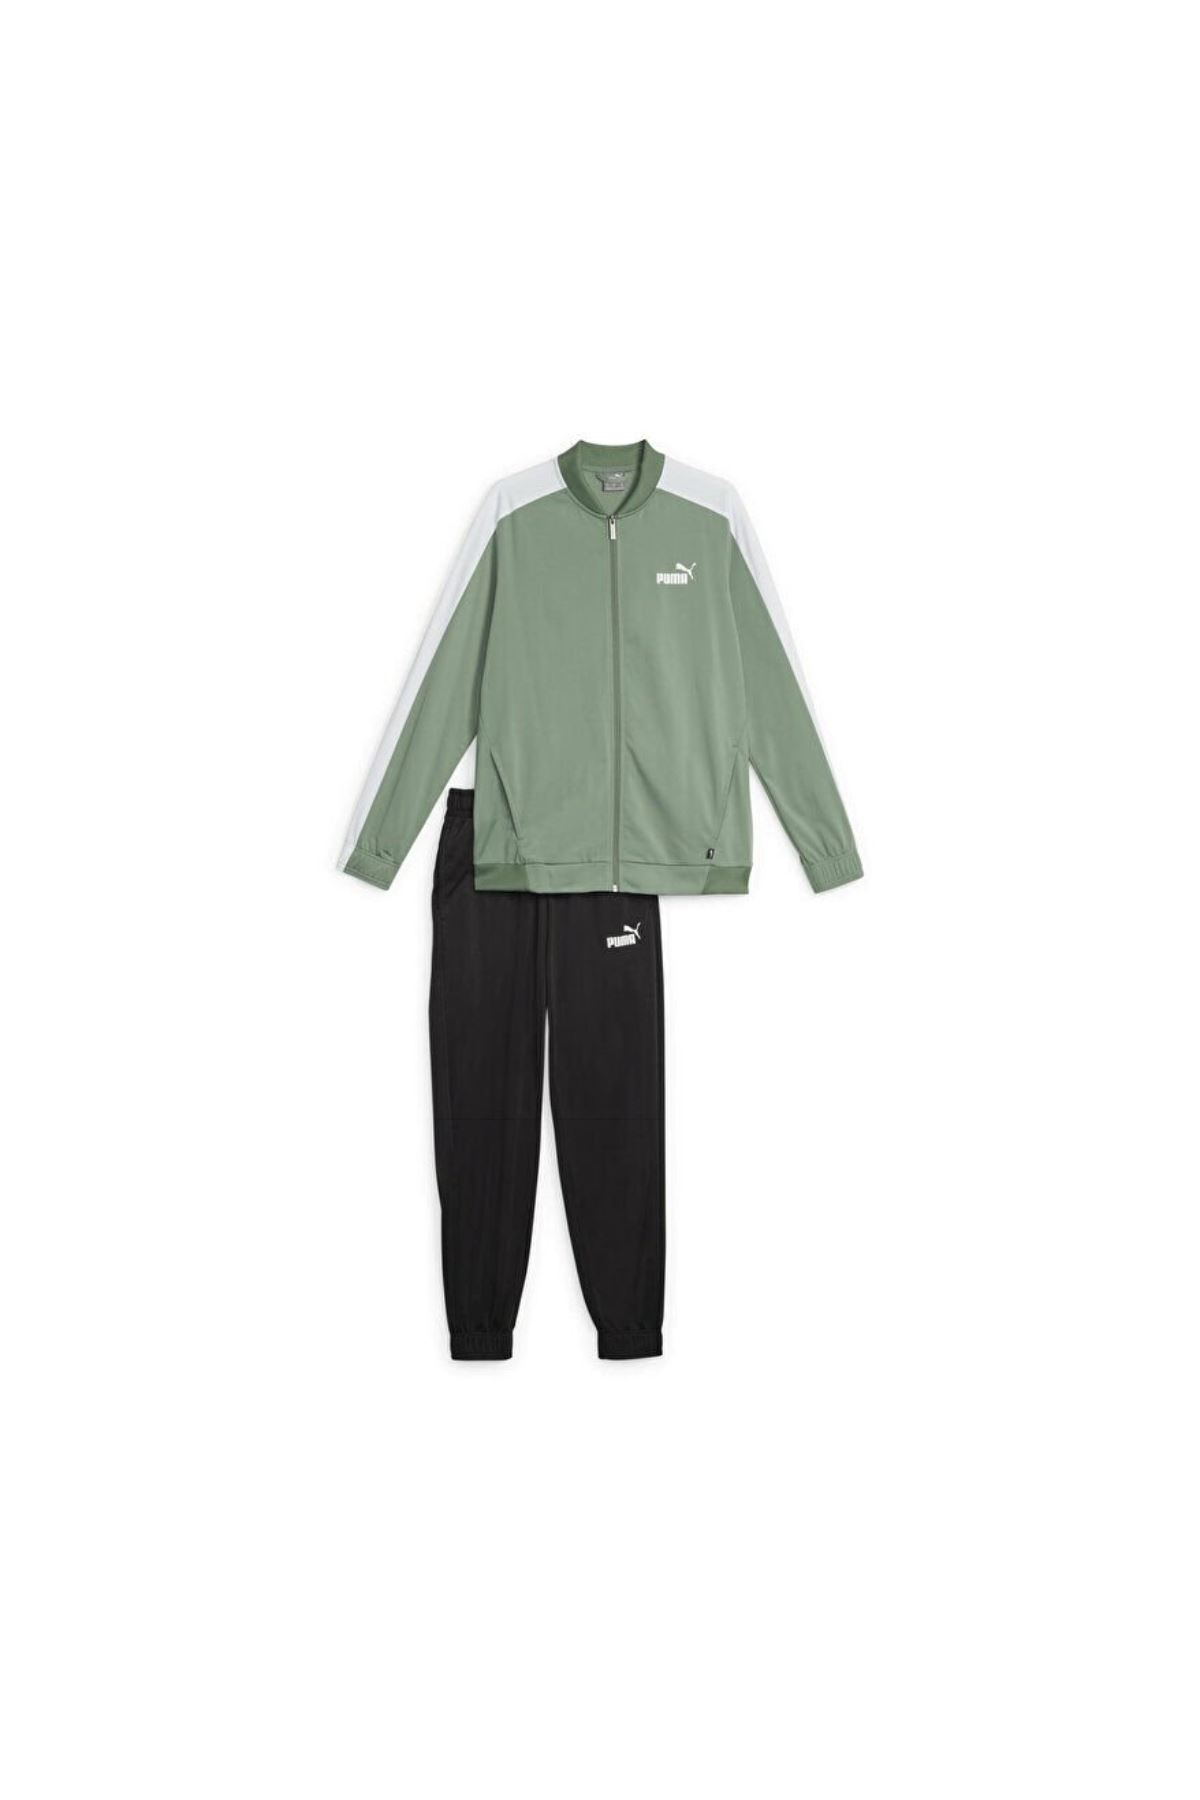 Puma Baseball Tricot Suit Erkek Yeşil Eşofman Takımı - 677428-45